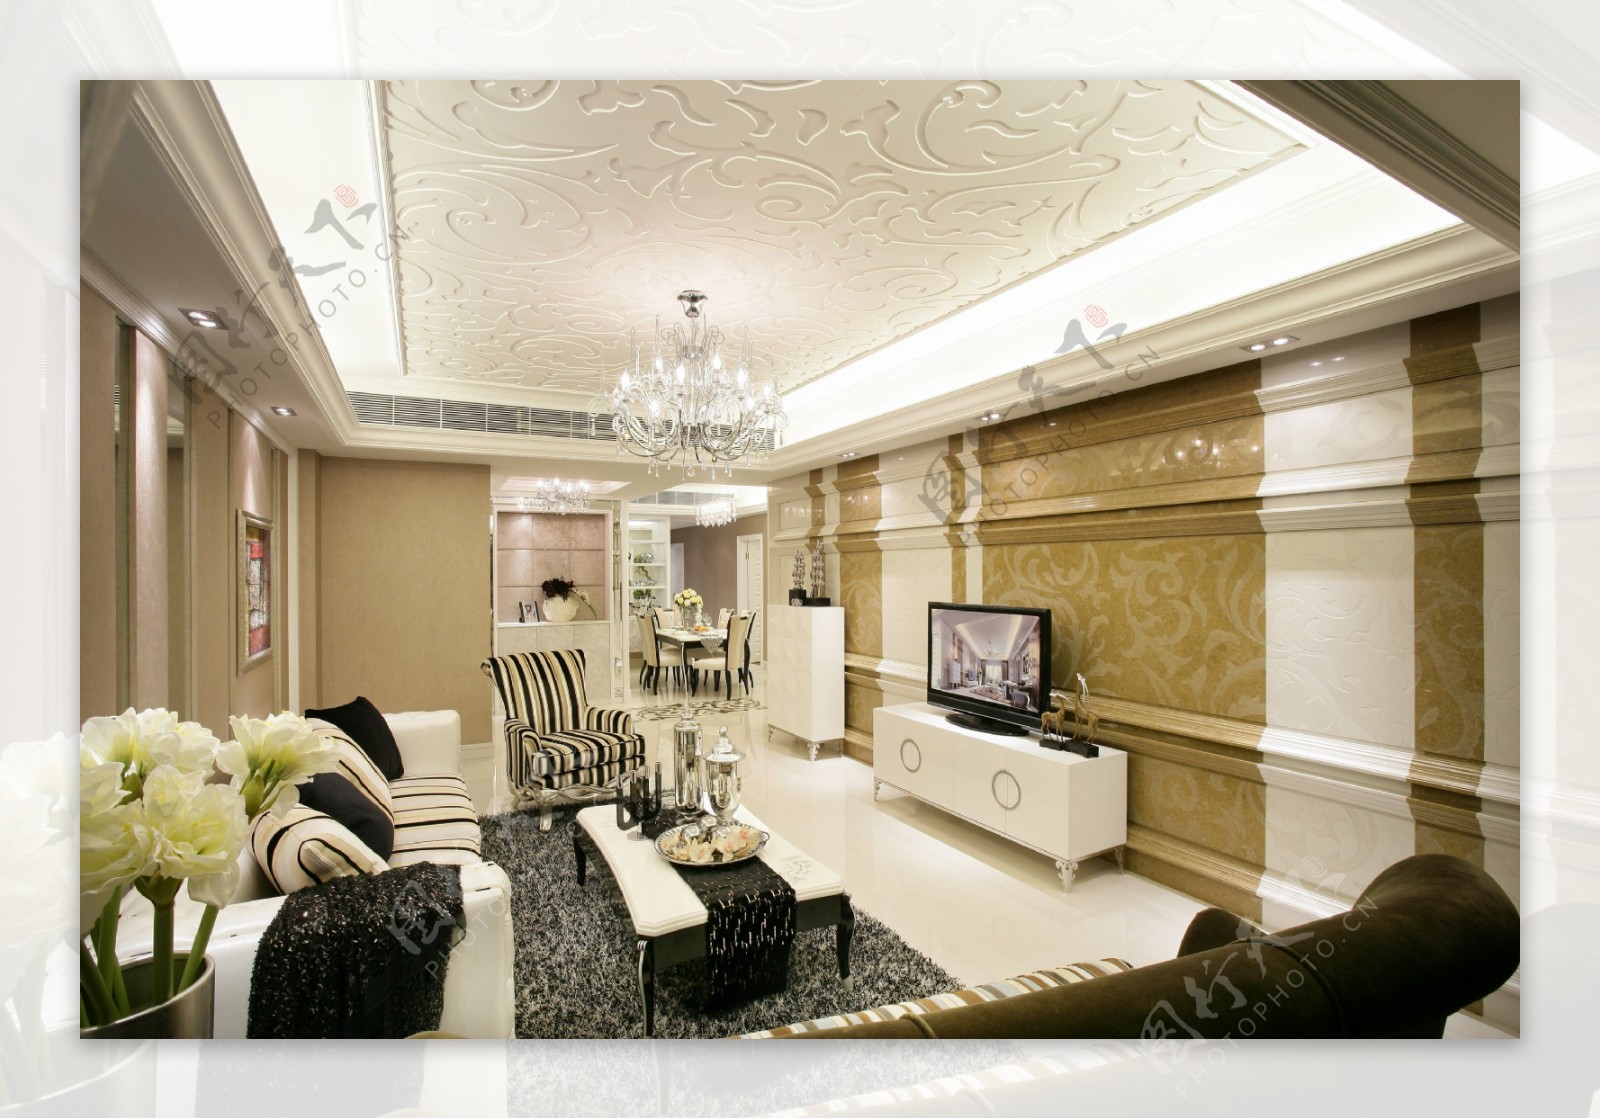 欧式客厅茶几电视墙设计图